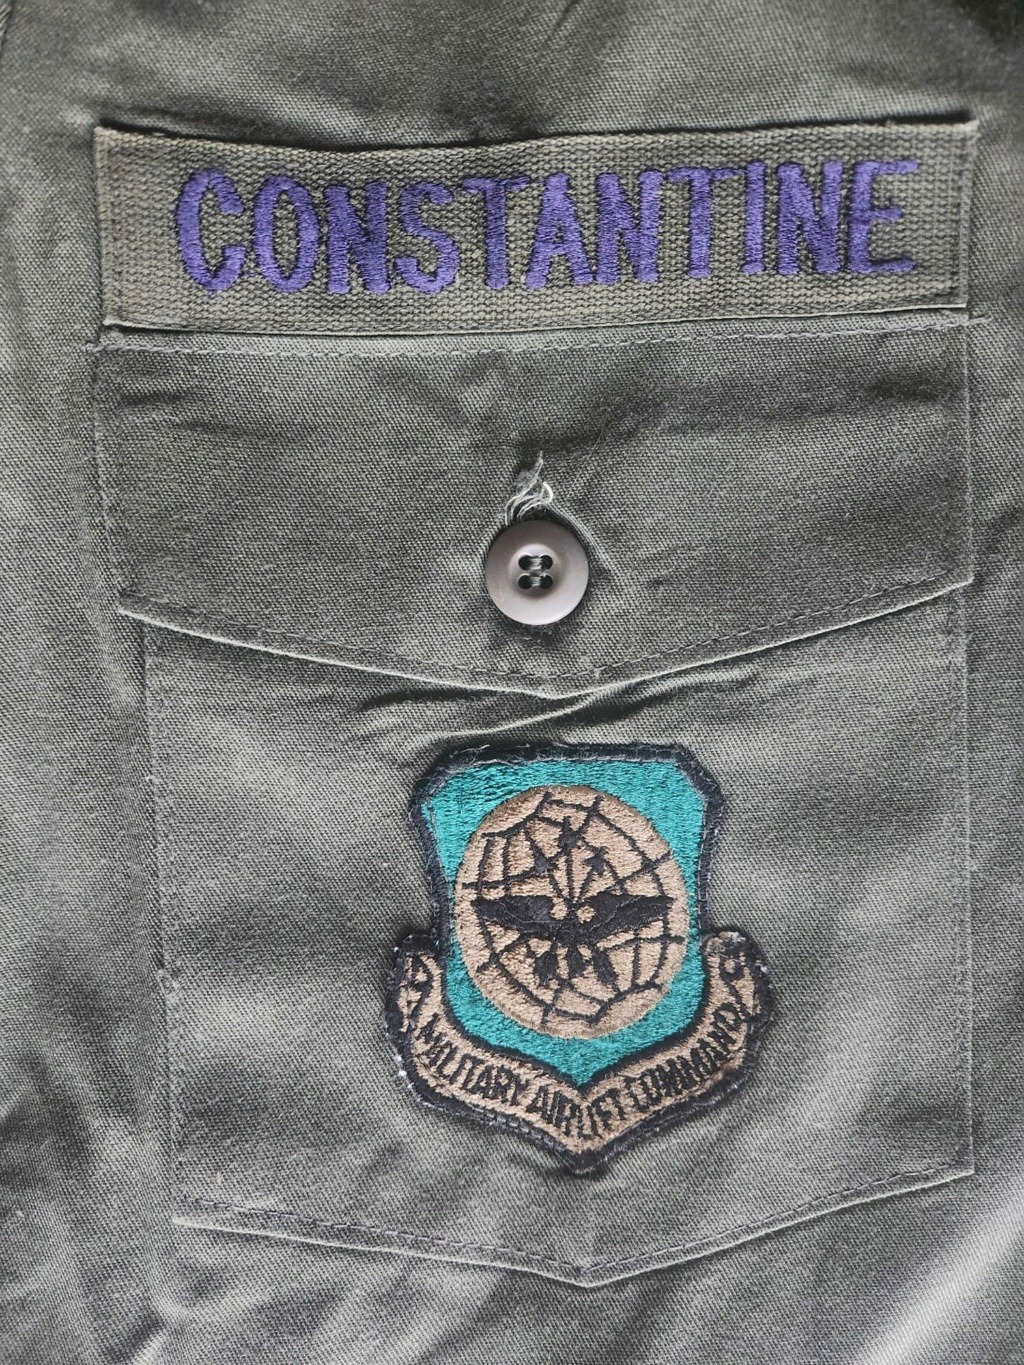 Veste OG-507 nominative du général William Constantine (vétéran Vietnam) Whatsa64